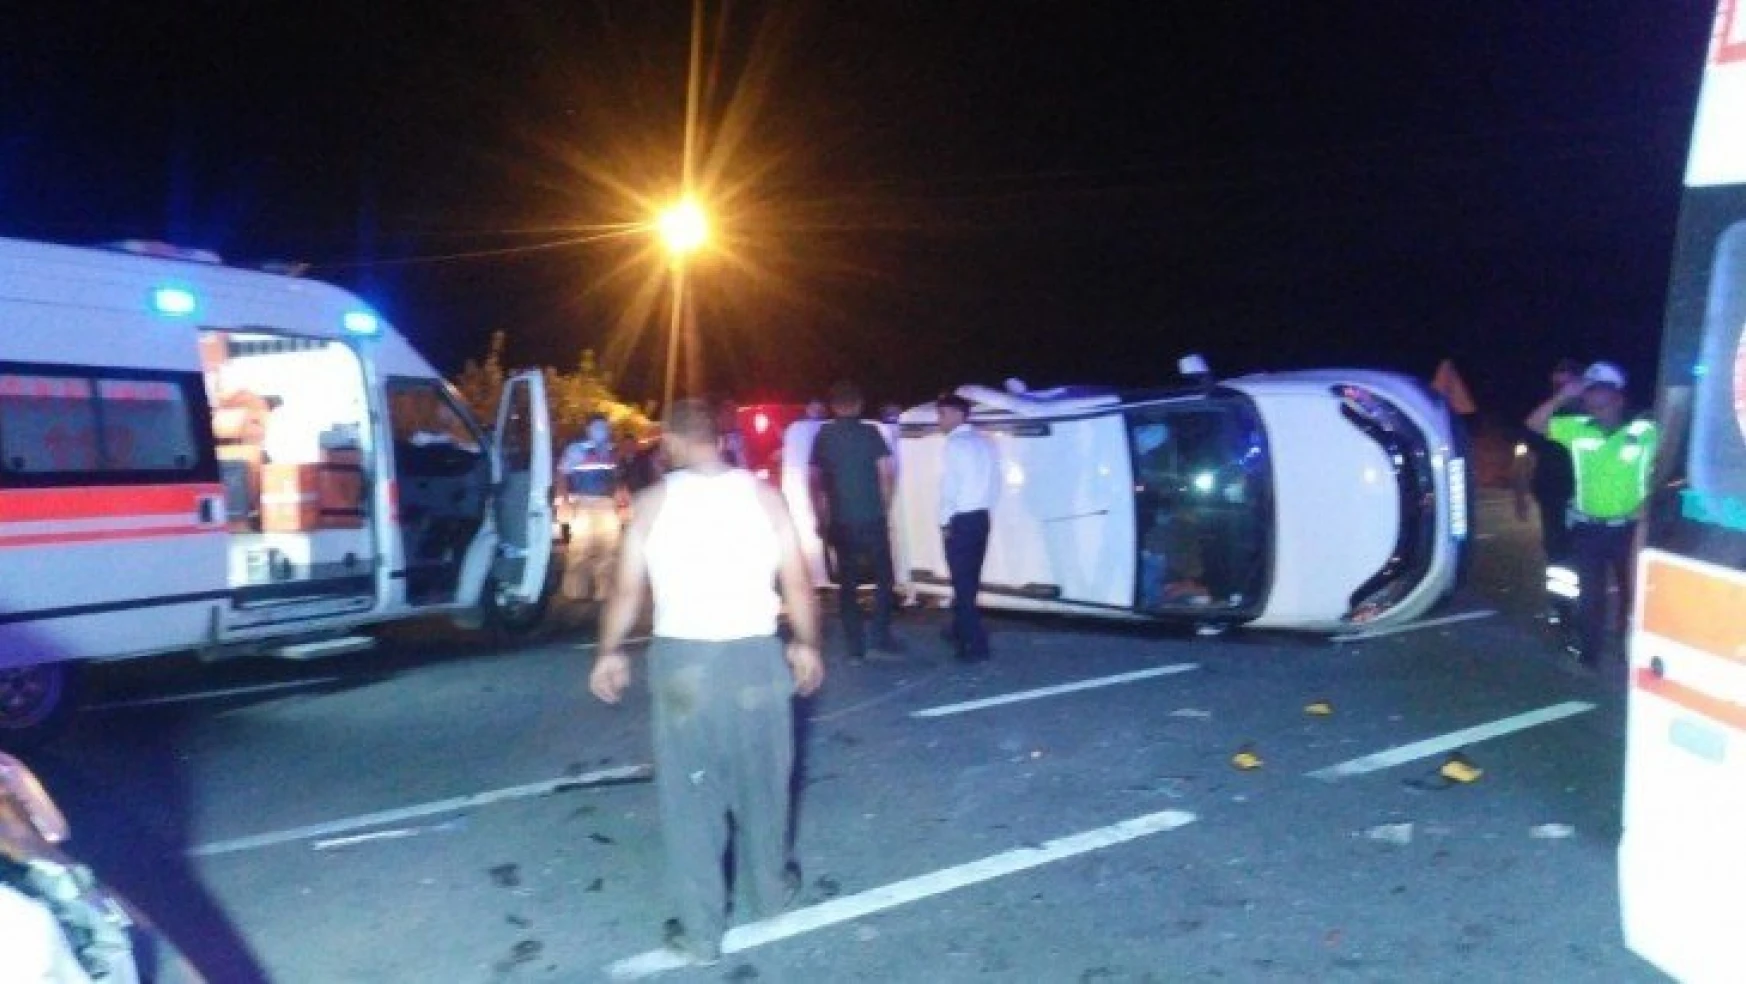 Malatya'da trafik kazası: 8 yaralı